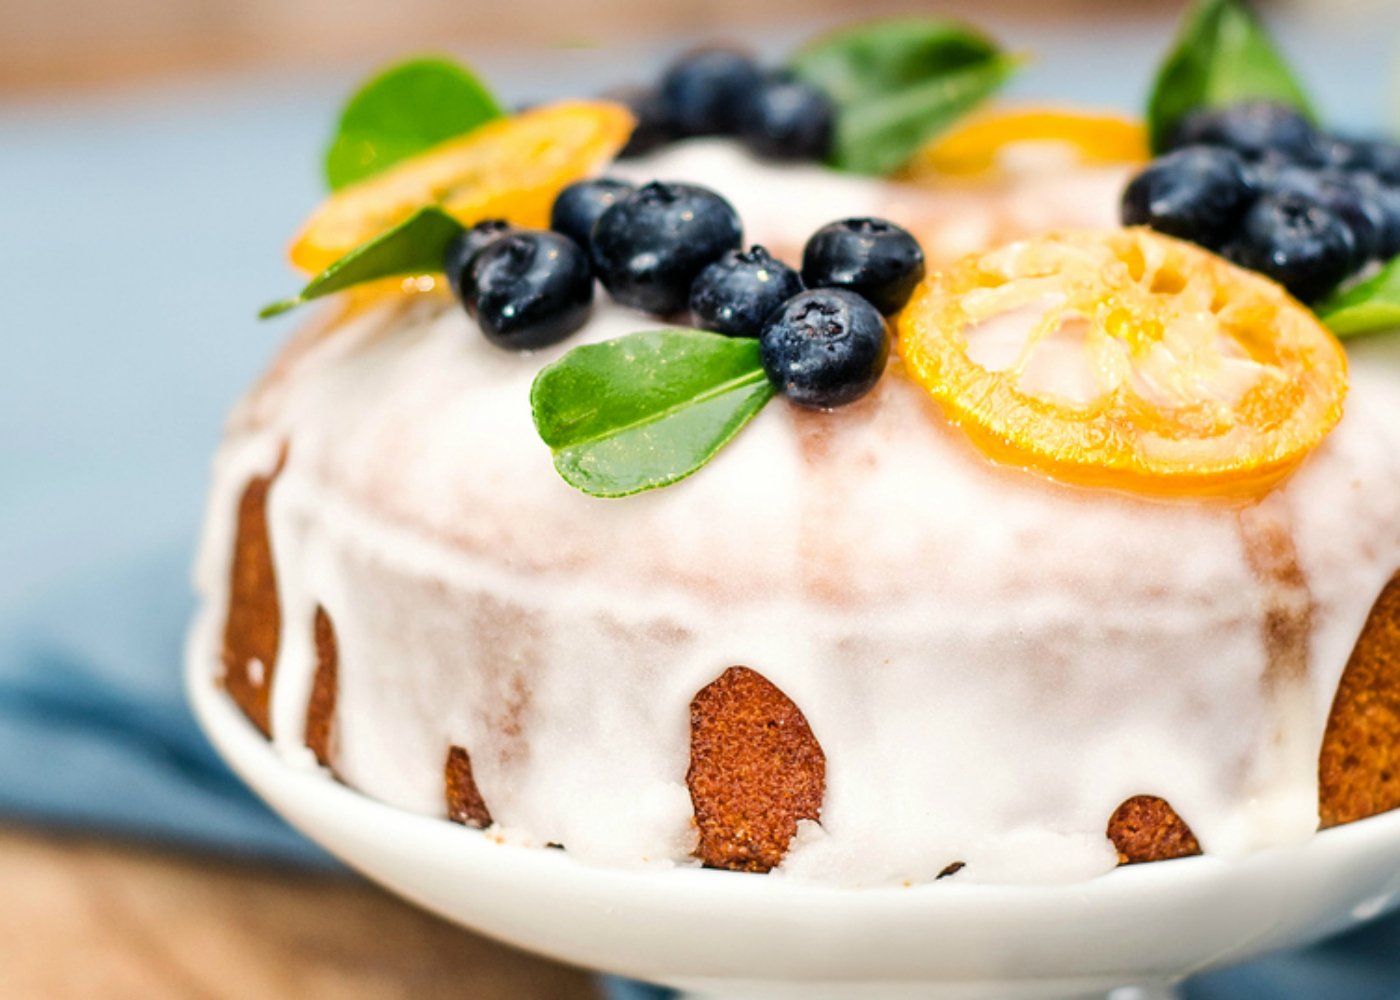 Glacê de açúcar: como preparar a famosa caldinha branca e doce para bolos simples